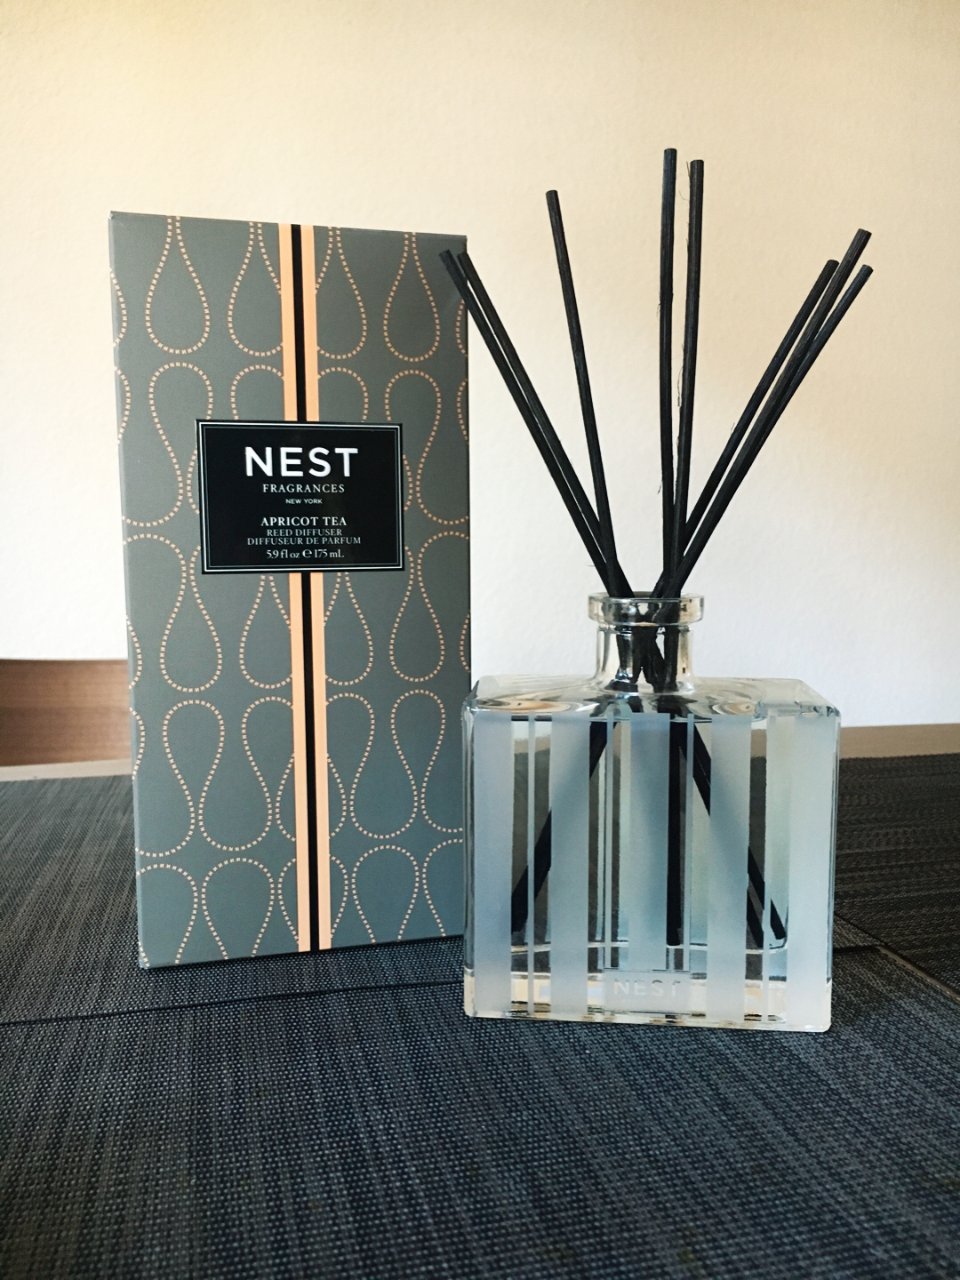 Nest,48美元